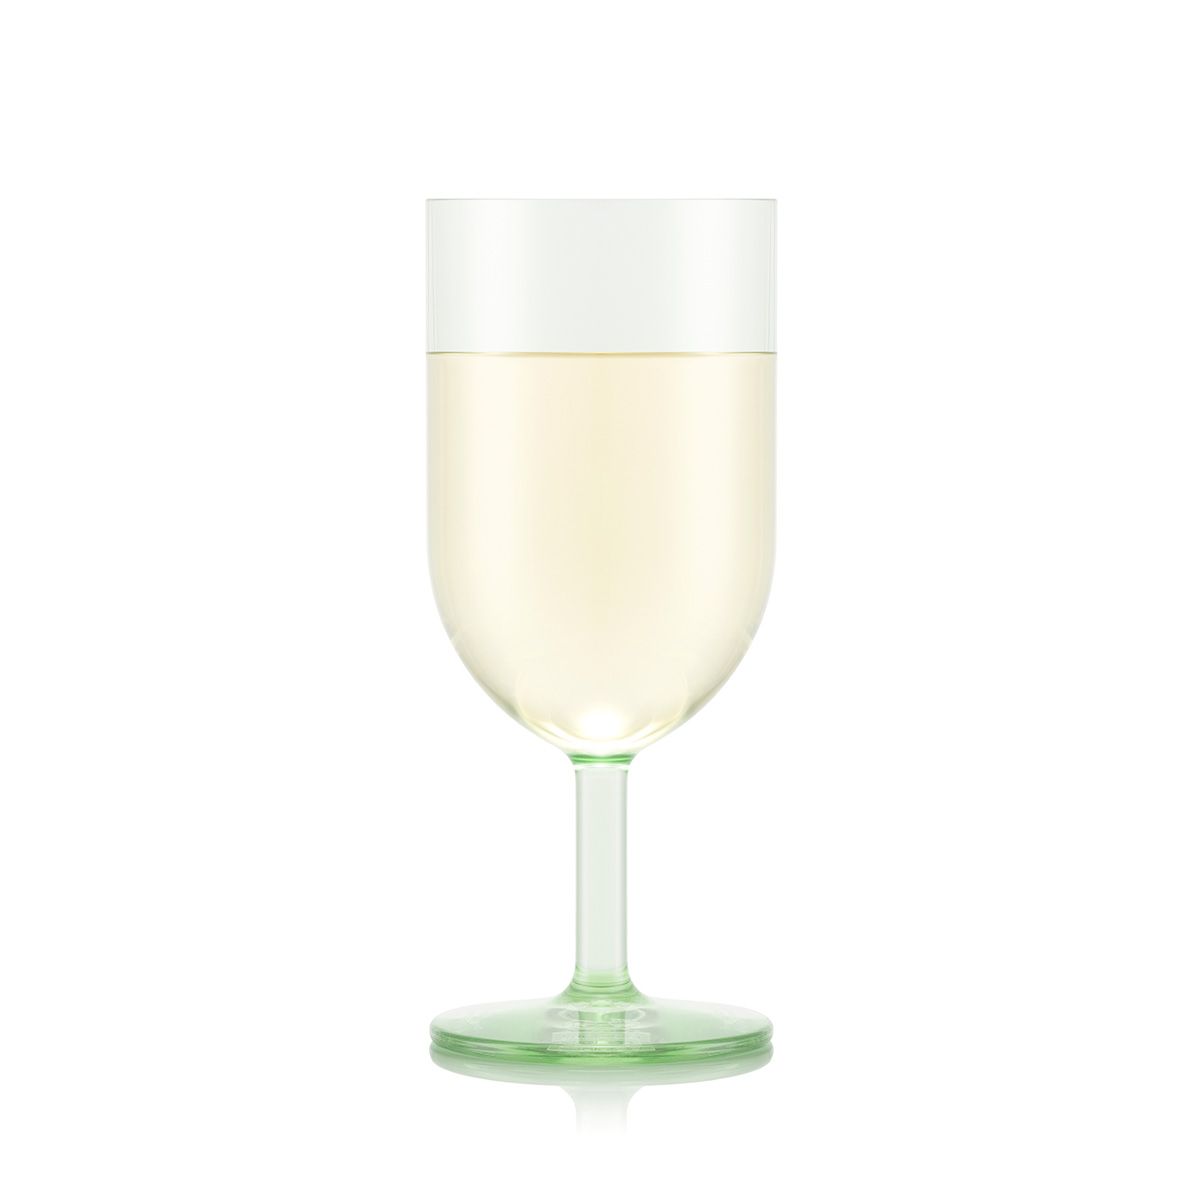 Bodum Oktett White Wine Glasses 4 stk. 0,23 L, pistache